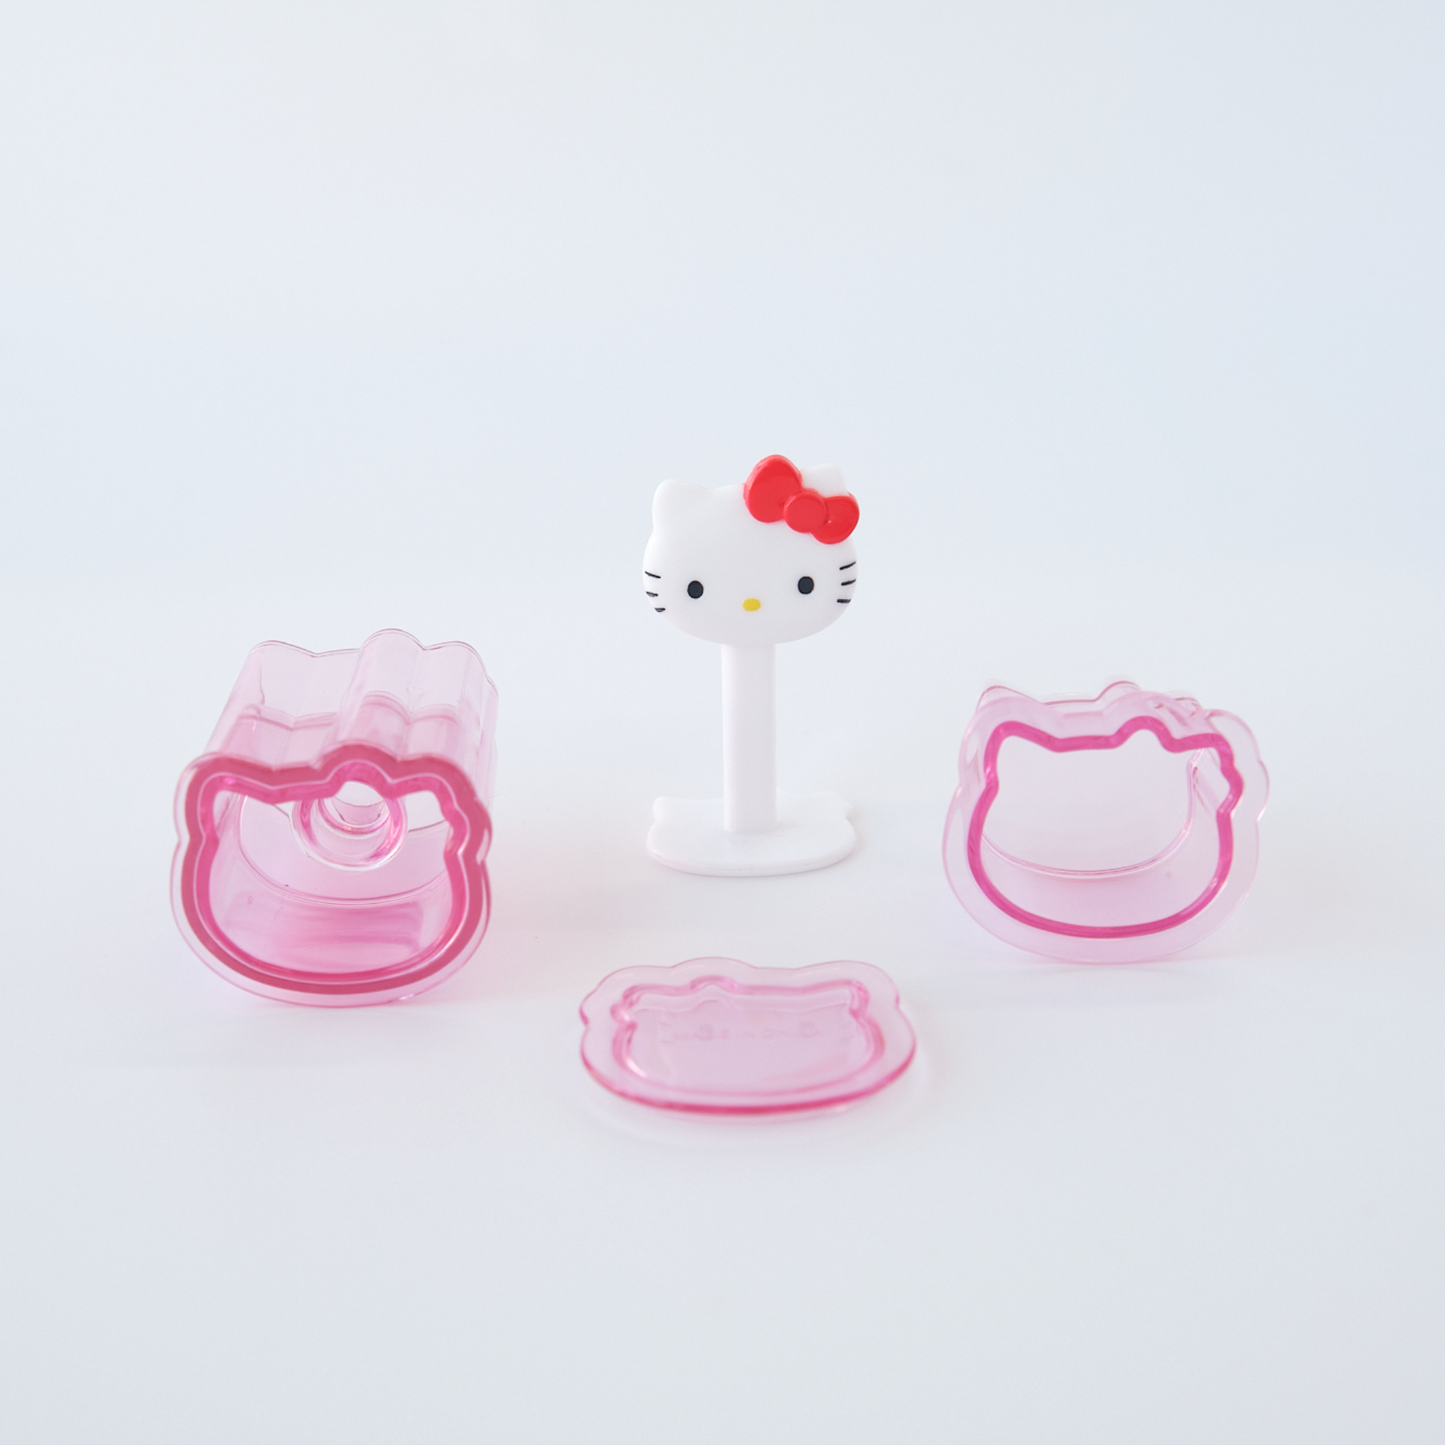 Juego de moldes Onigiri de Hello Kitty